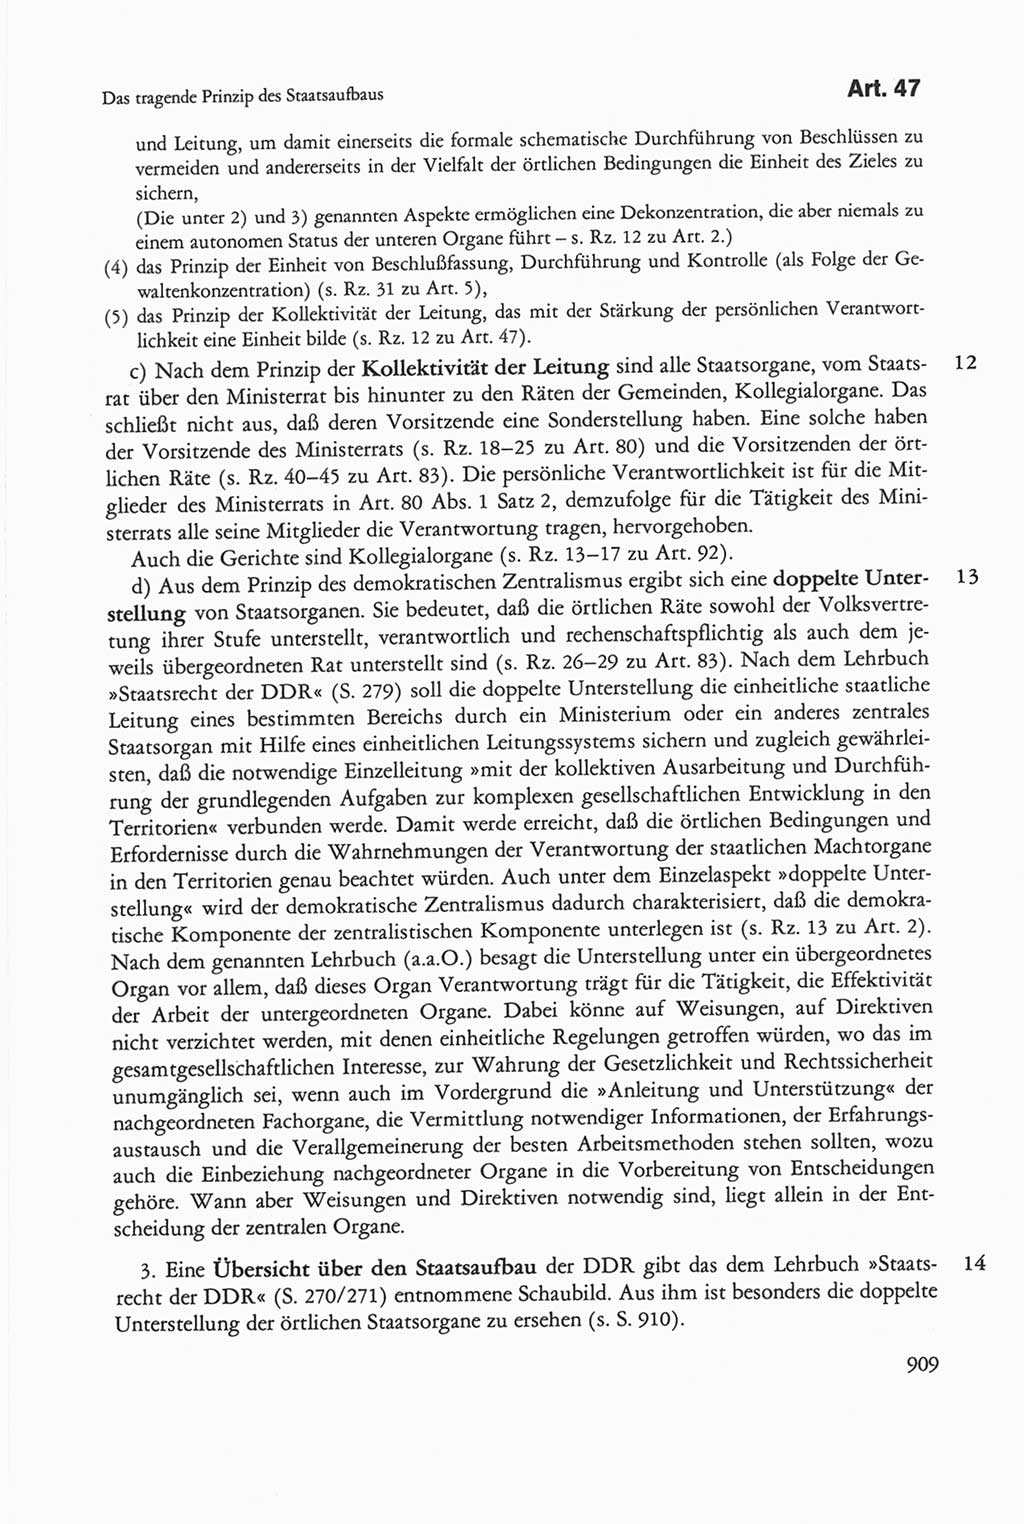 Die sozialistische Verfassung der Deutschen Demokratischen Republik (DDR), Kommentar 1982, Seite 909 (Soz. Verf. DDR Komm. 1982, S. 909)